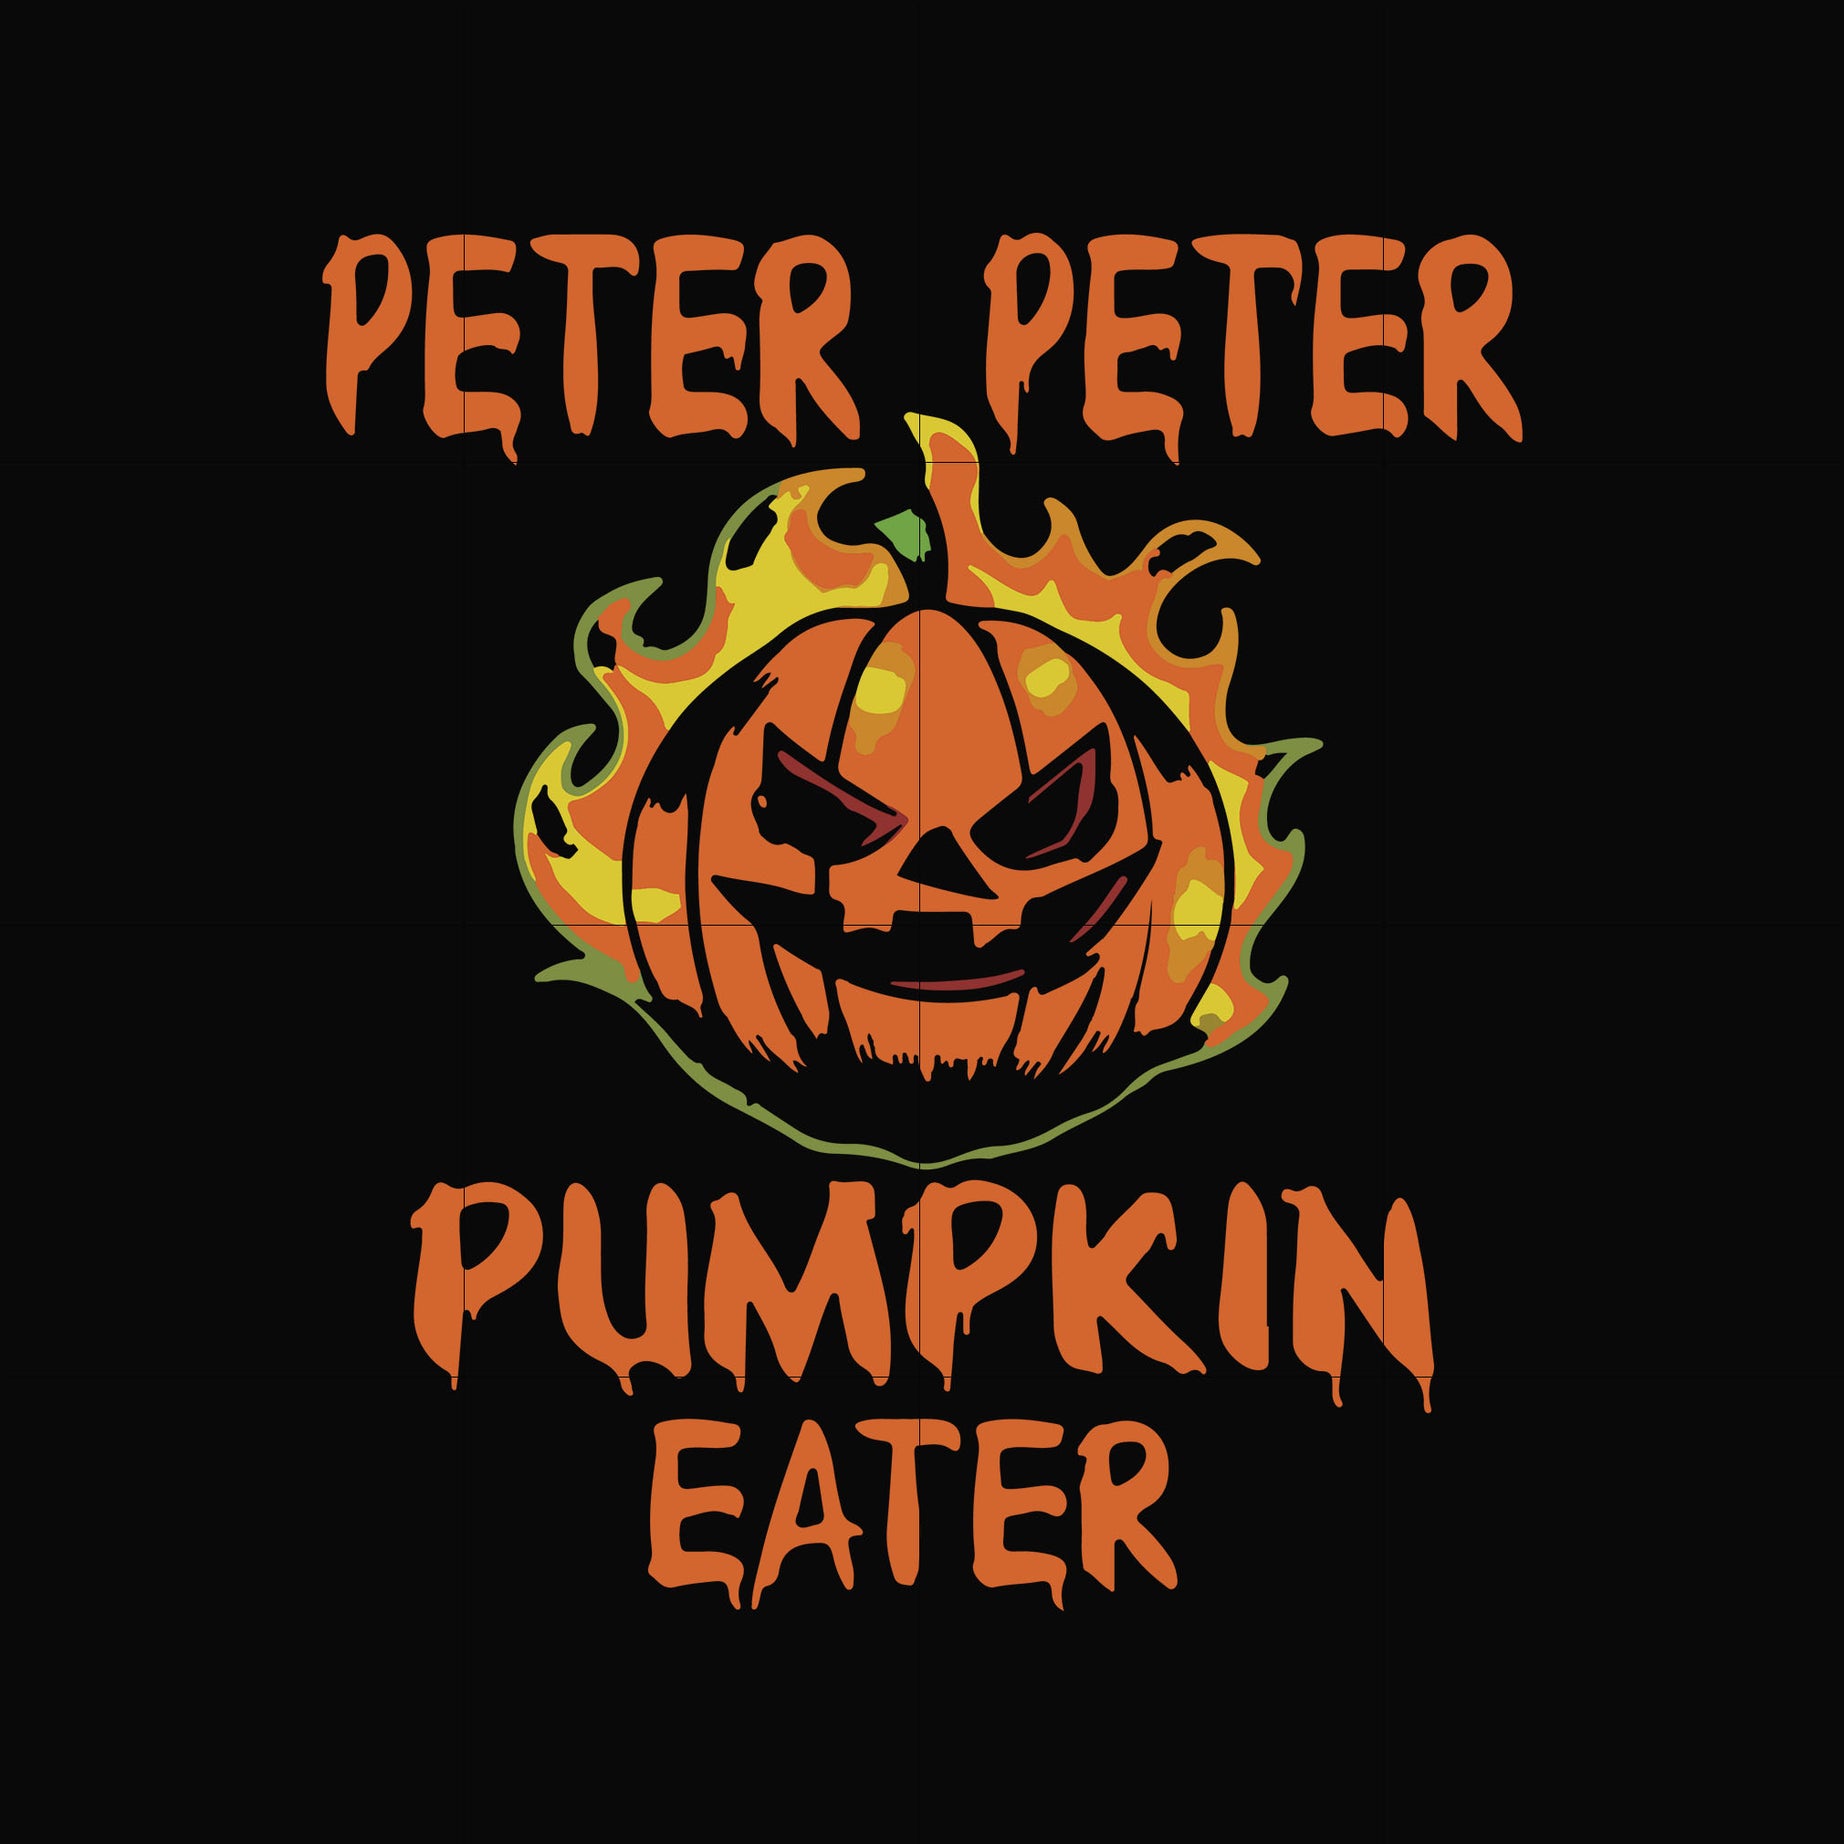 Peter peter pumpkin eater svg, halloween svg, png, dxf, eps digital file HLW0024